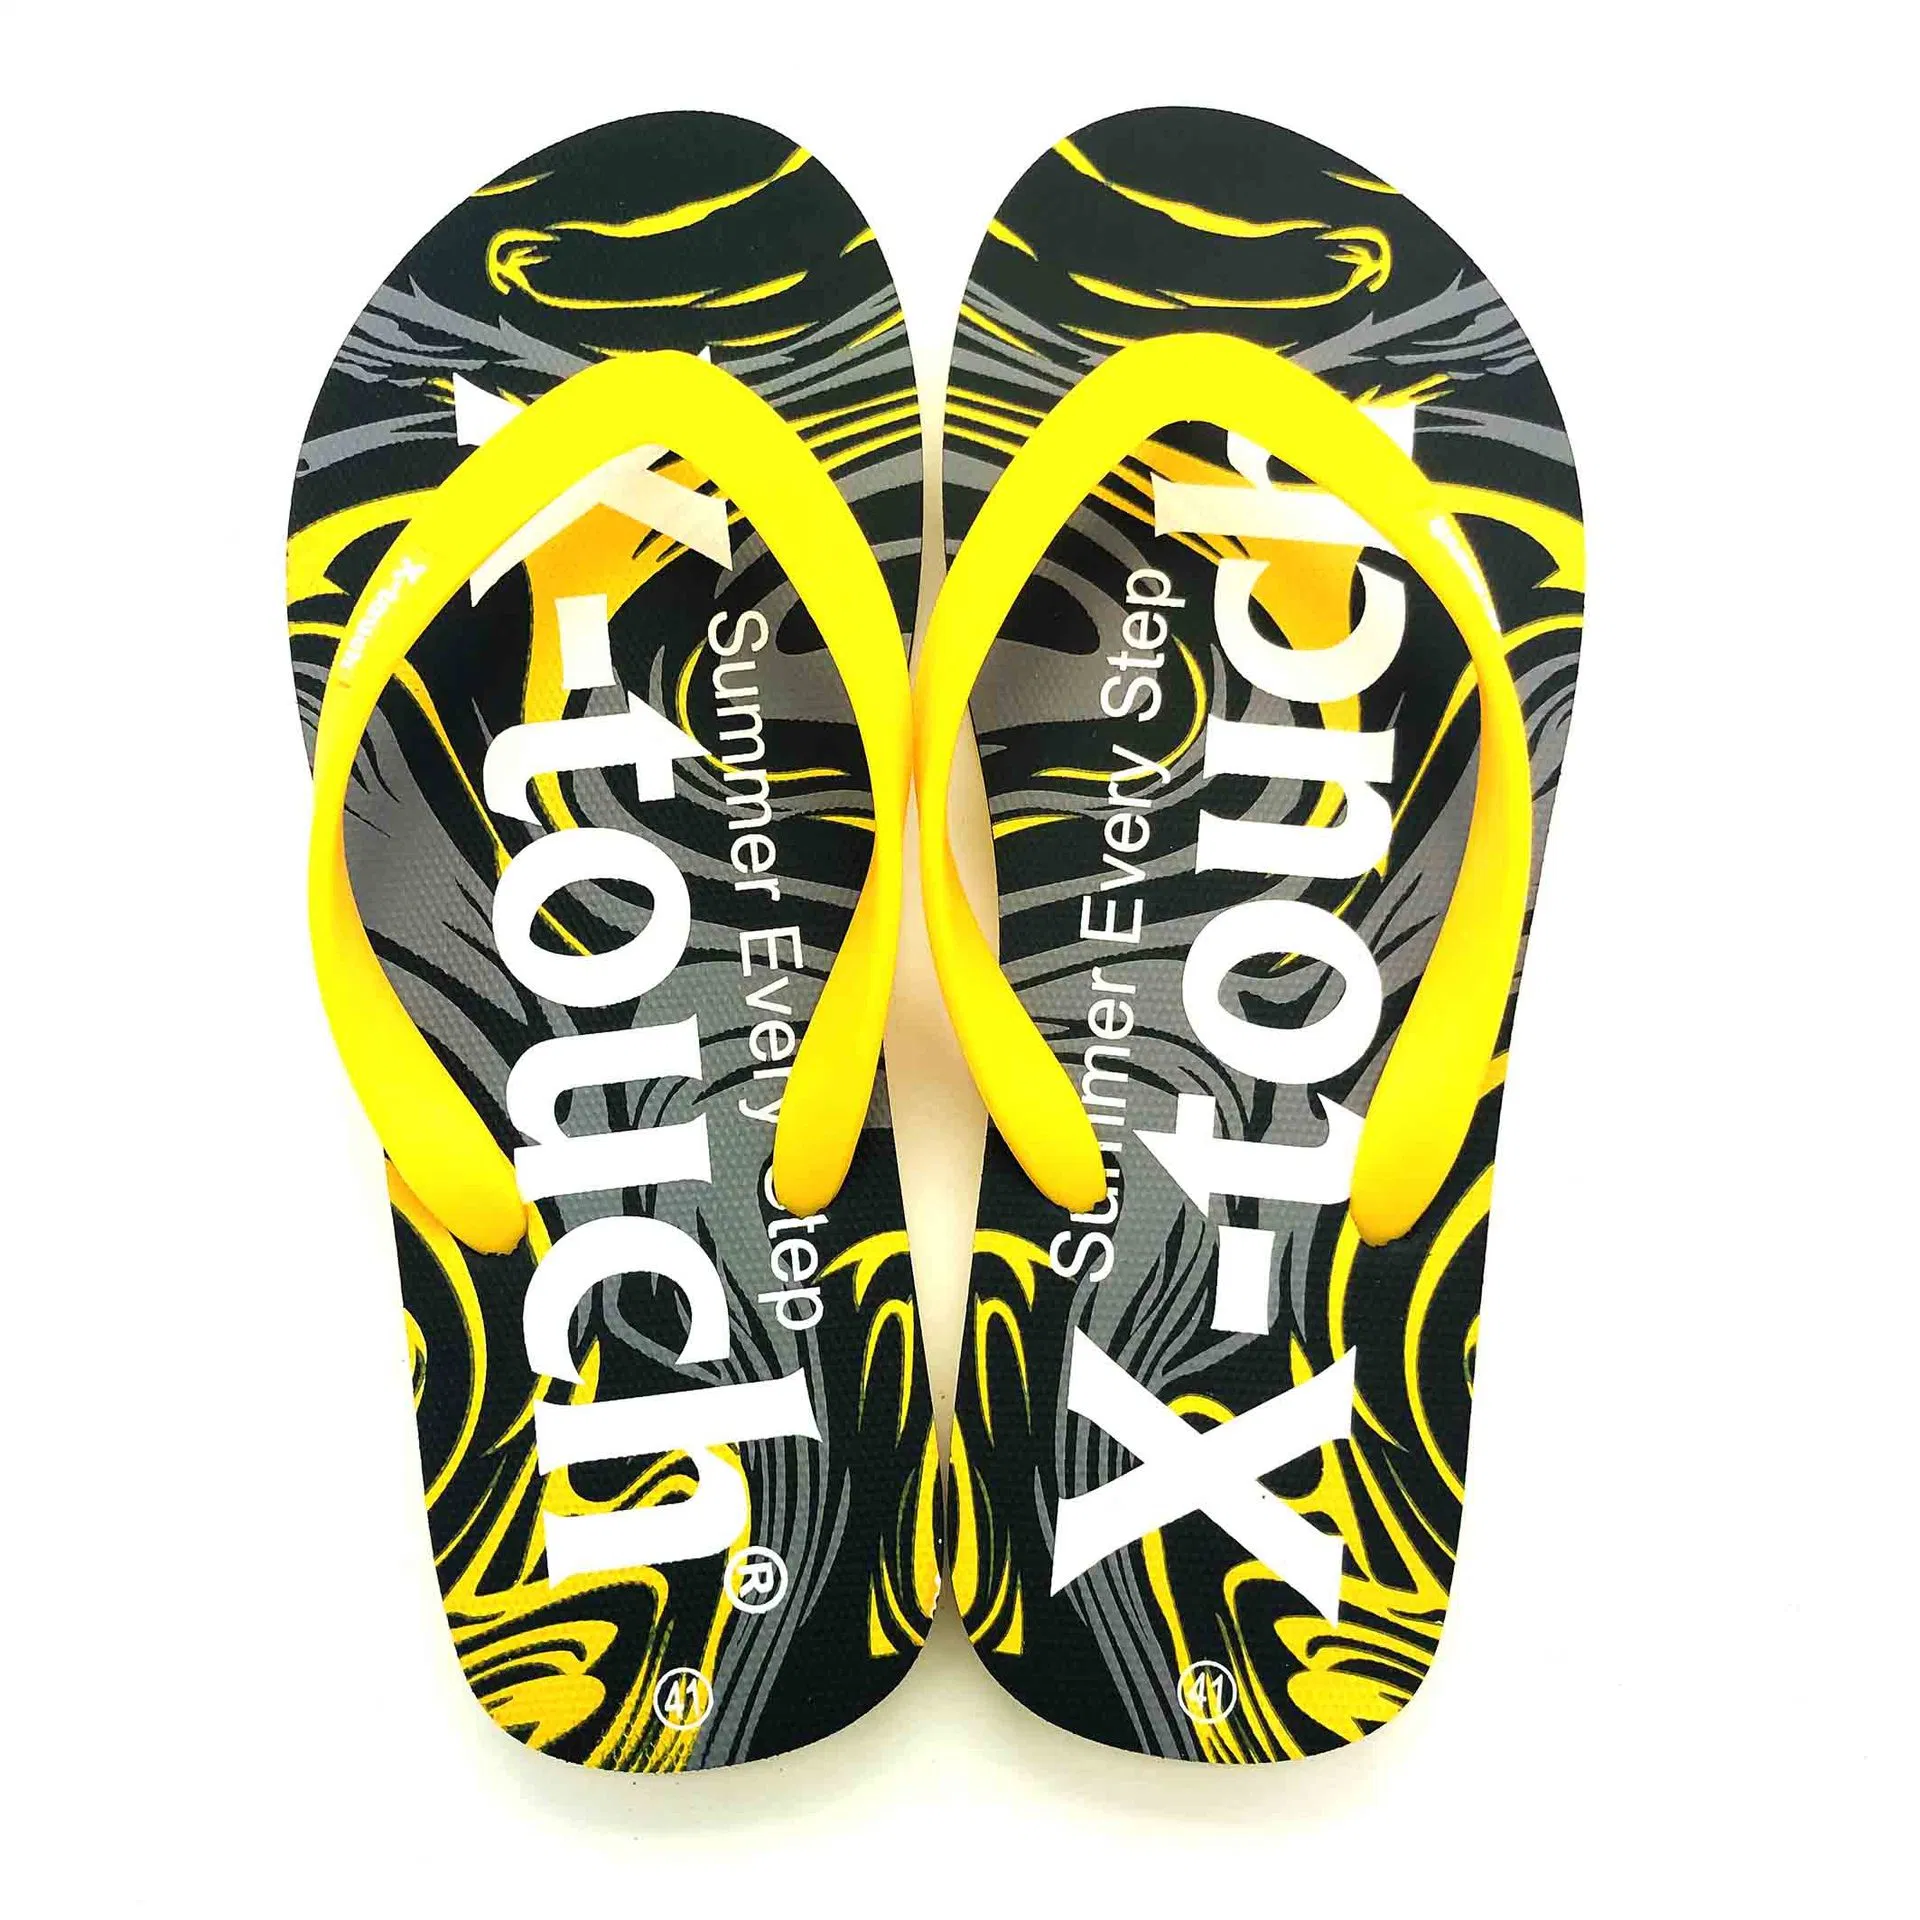 Conception personnalisée Flip-Flops Manufacture femmes Flip Flops Summer Sandals Slides Tongs avec logo chaussons